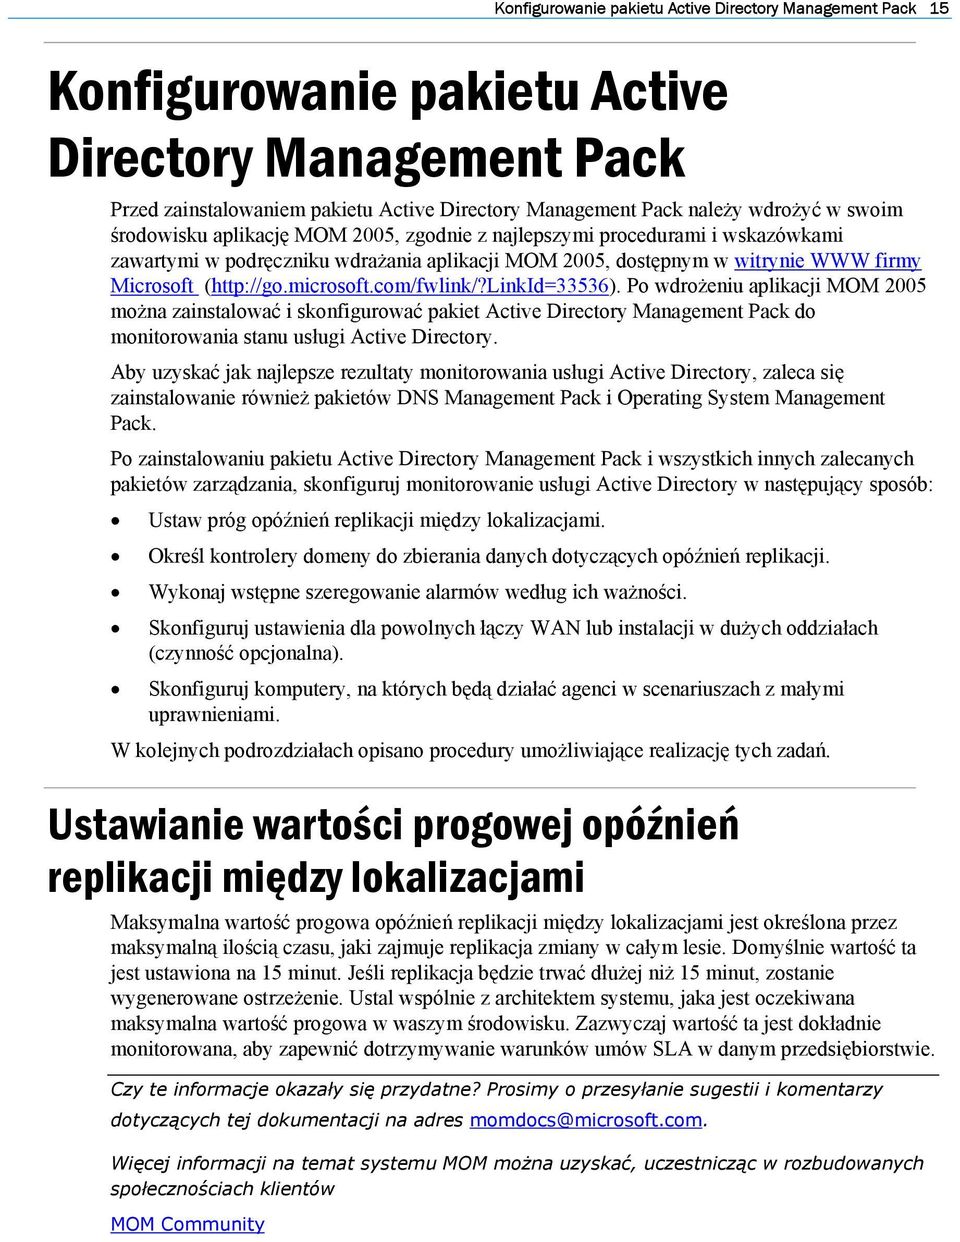 microsoft.com/fwlink/?linkid=33536). Po wdrożeniu aplikacji MOM 2005 można zainstalować i skonfigurować pakiet Active Directory Management Pack do monitorowania stanu usługi Active Directory.